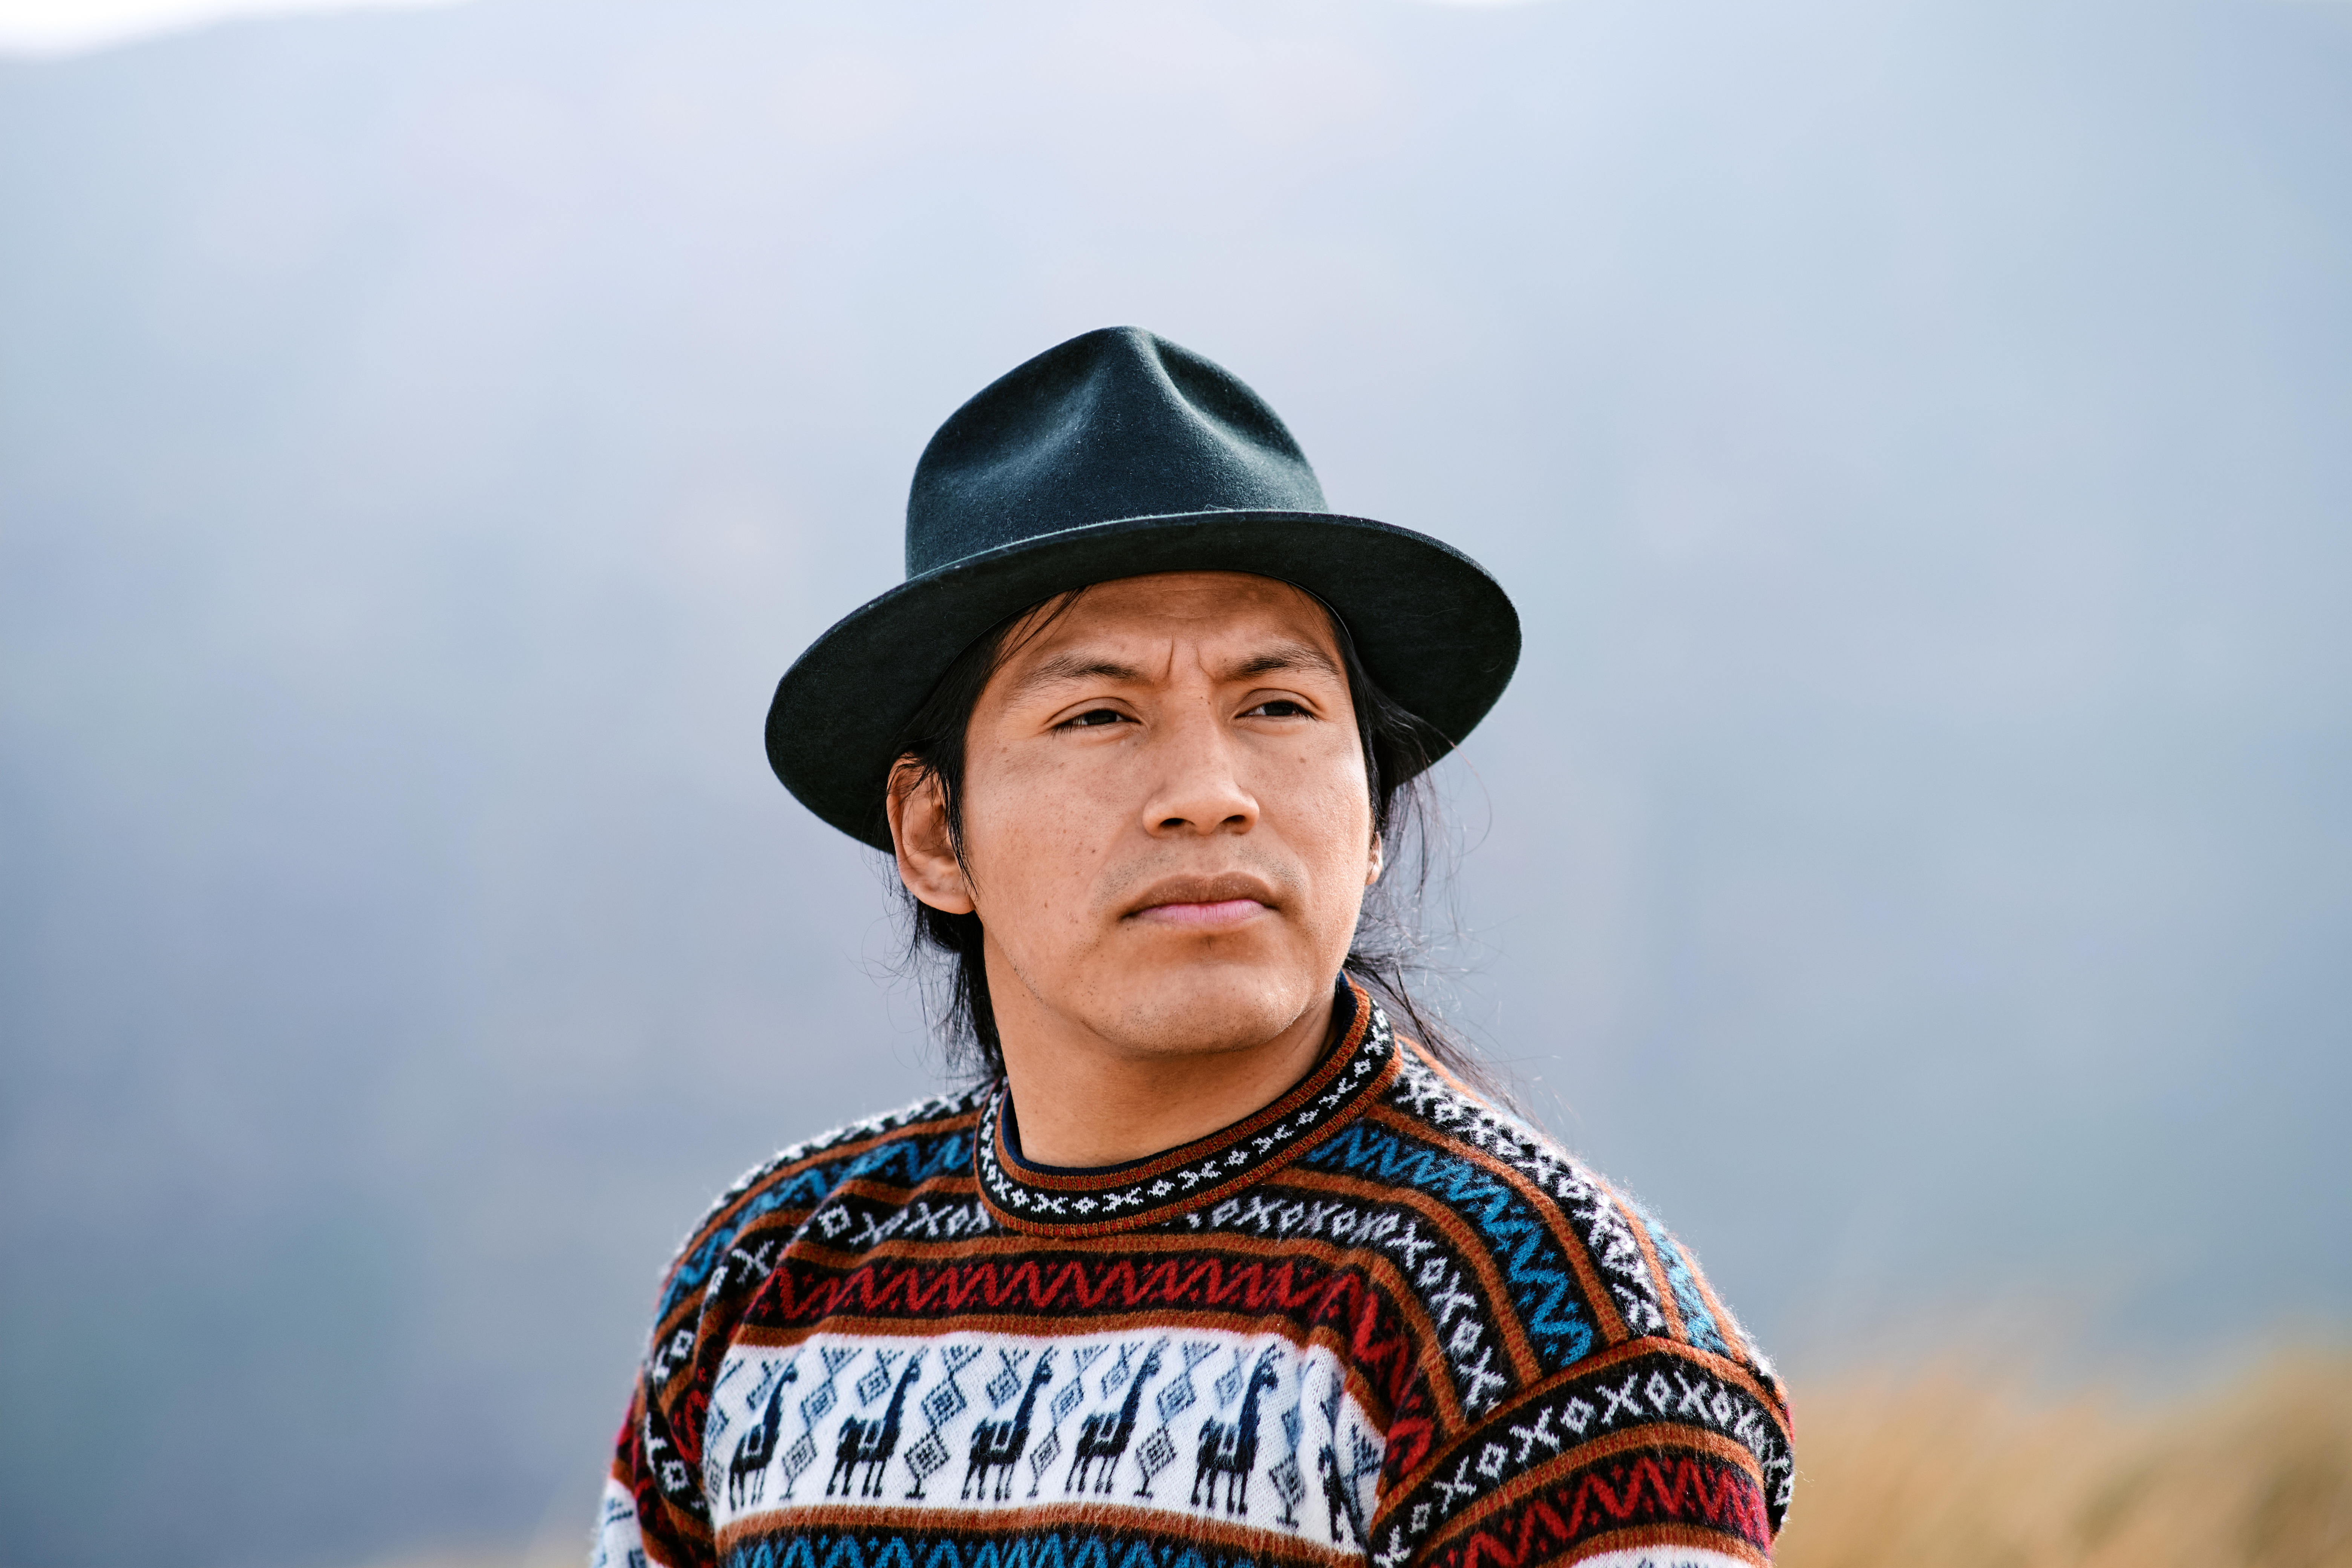 Portrait of indigenous man